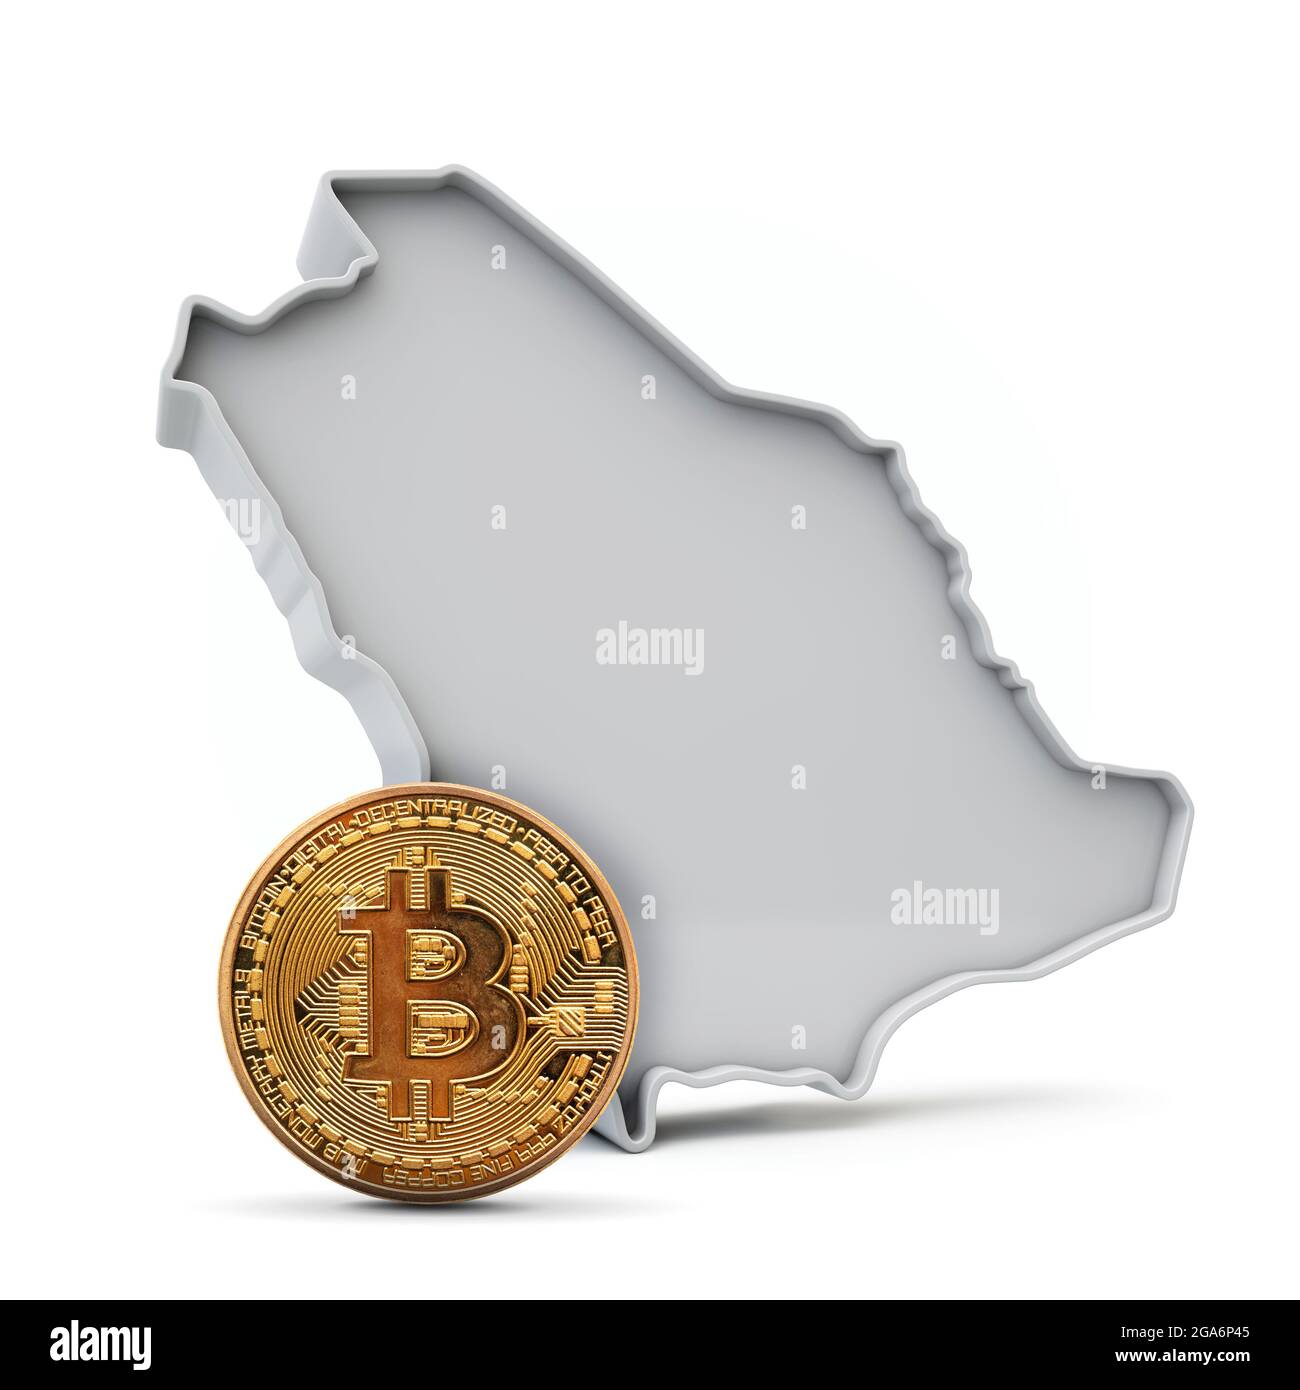 Saudi-Arabien Bitcoin Hintergrund. Kryptowährung Münze mit Karte. 3D-Rendering Stockfoto